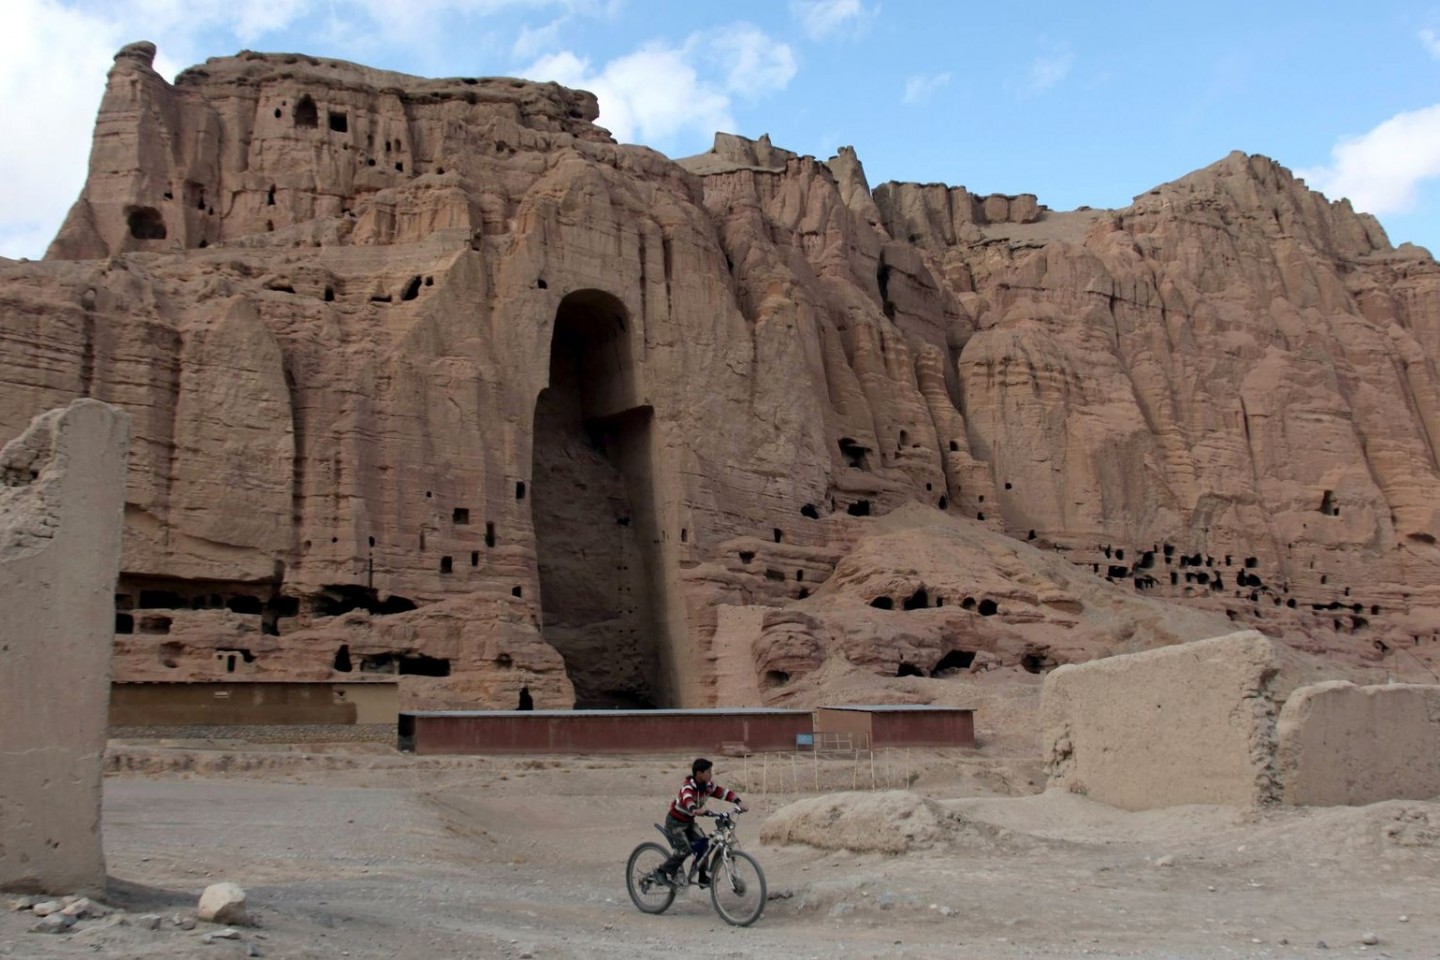 Am 12.03.2001 bestätigte die Unesco die Zerstörung der Buddha-Statuen im afghanischen Bamian durch die Taliban.